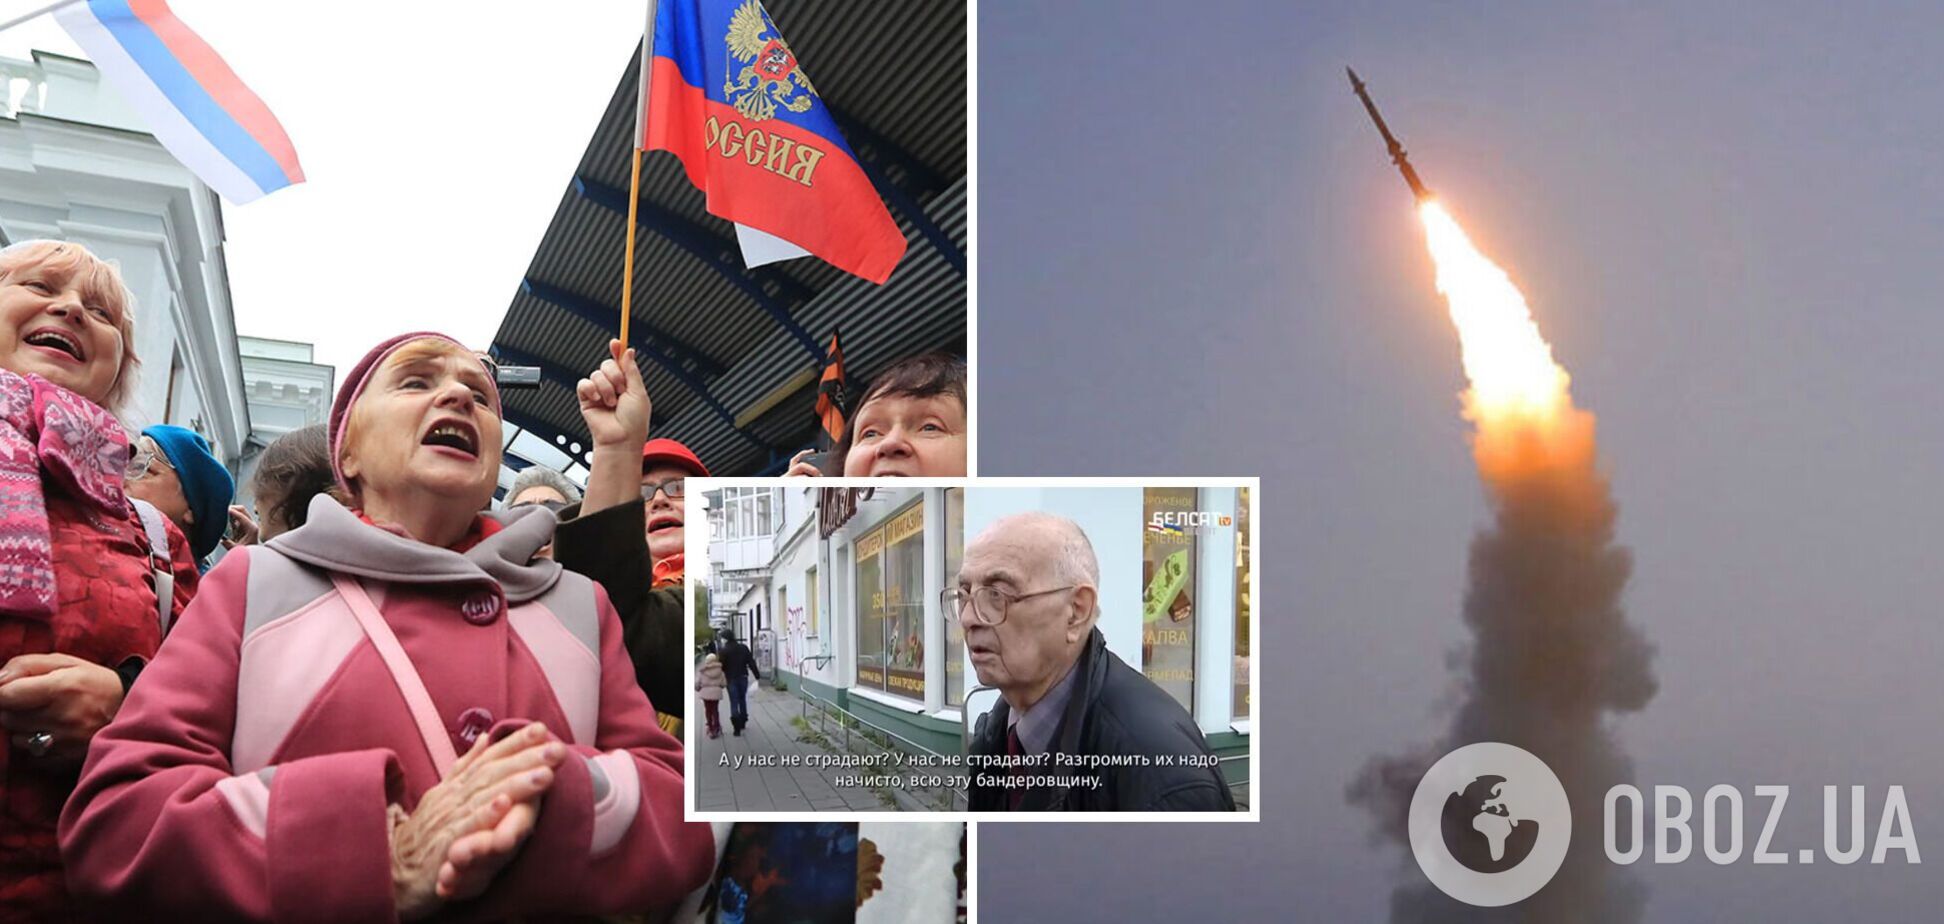 'Разгромить их всех надо': россияне рассказали, что думают о массированном ракетном обстреле Украины. Видео